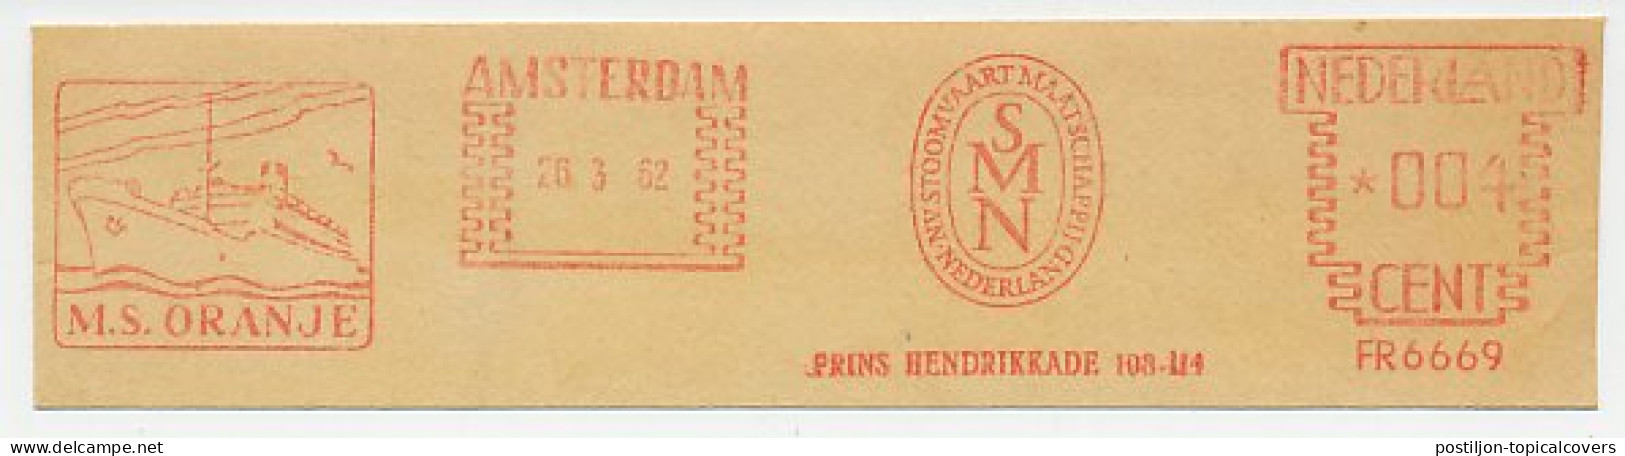 Meter Cut Netherlands 1962 SMN - Steamship Company Netherlands - M.S. Oranje - Ocean Liner - Ships